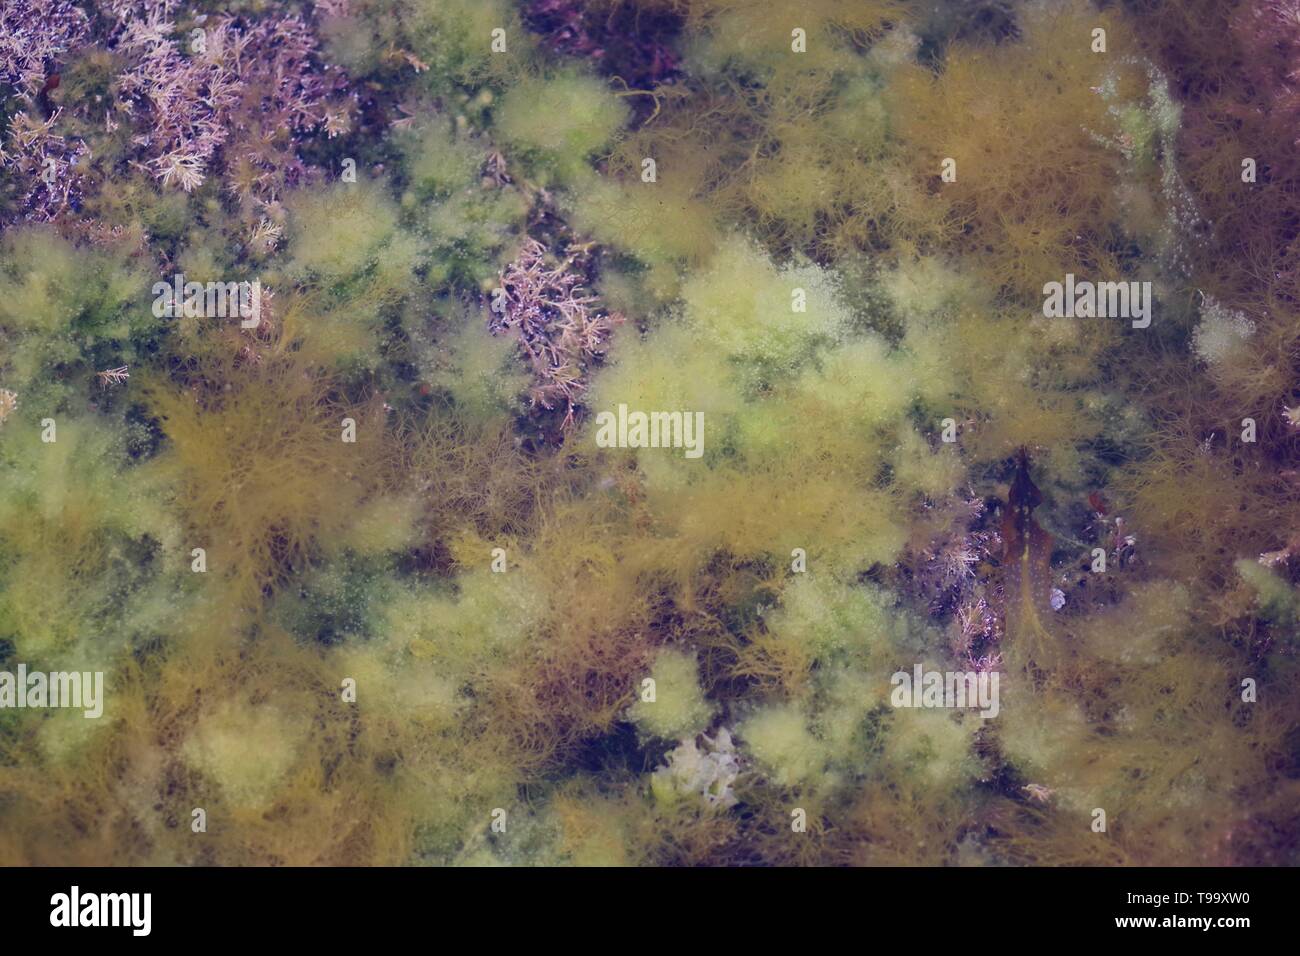 Darmkraut (Ulva intestinalis) und Korallenkraut (Corallina officinalis) in einem Steinppol in der Küstenzone. Fife, Küste. Schottland, Großbritannien. Stockfoto